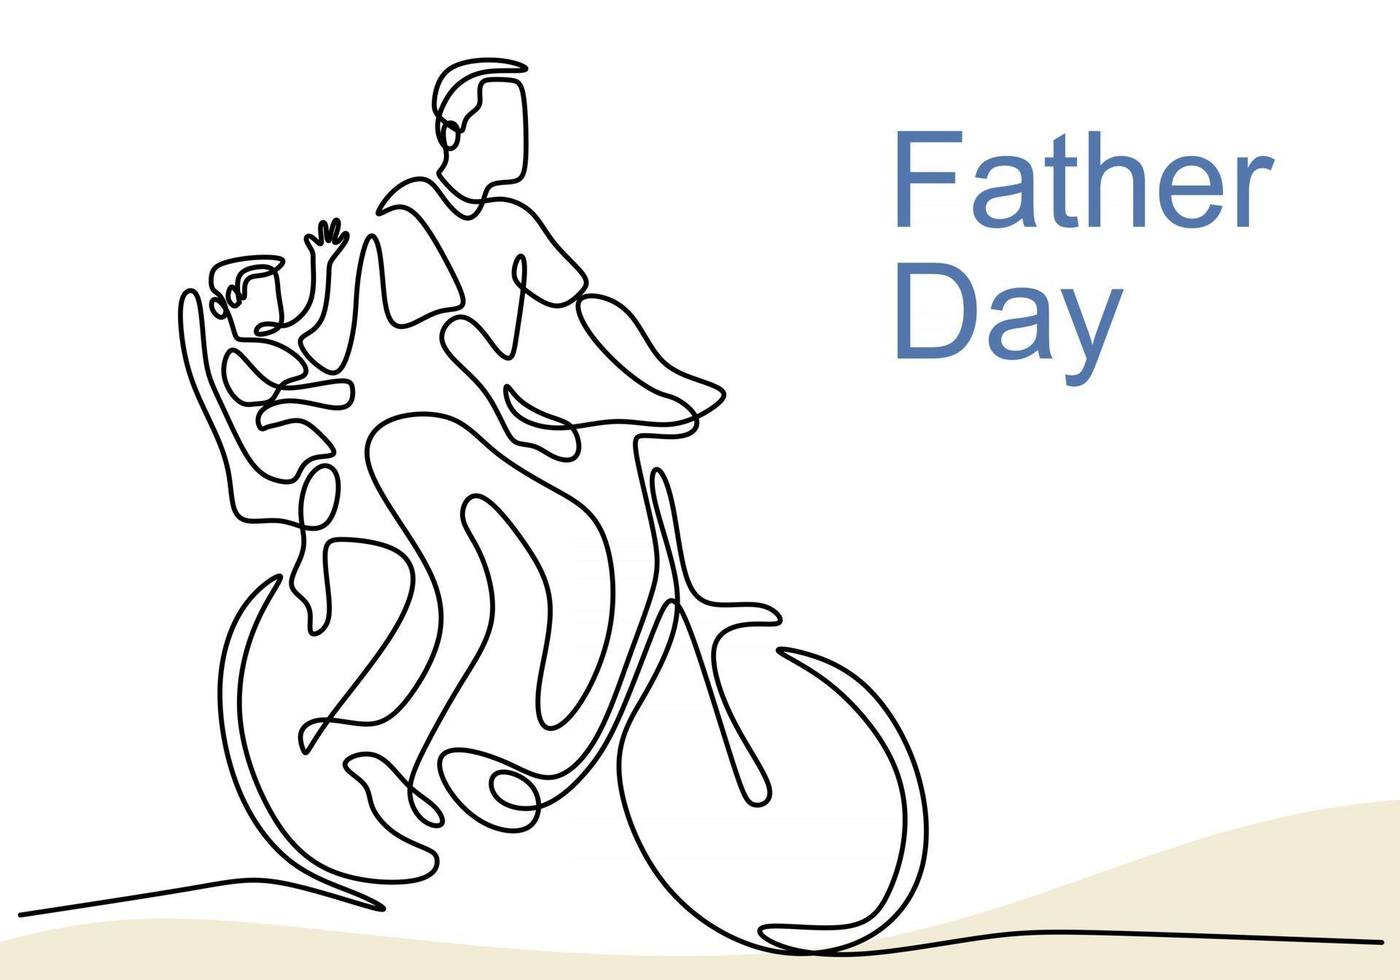 één doorlopende enkele getekende één lijn van vader met een kind op een fiets vector